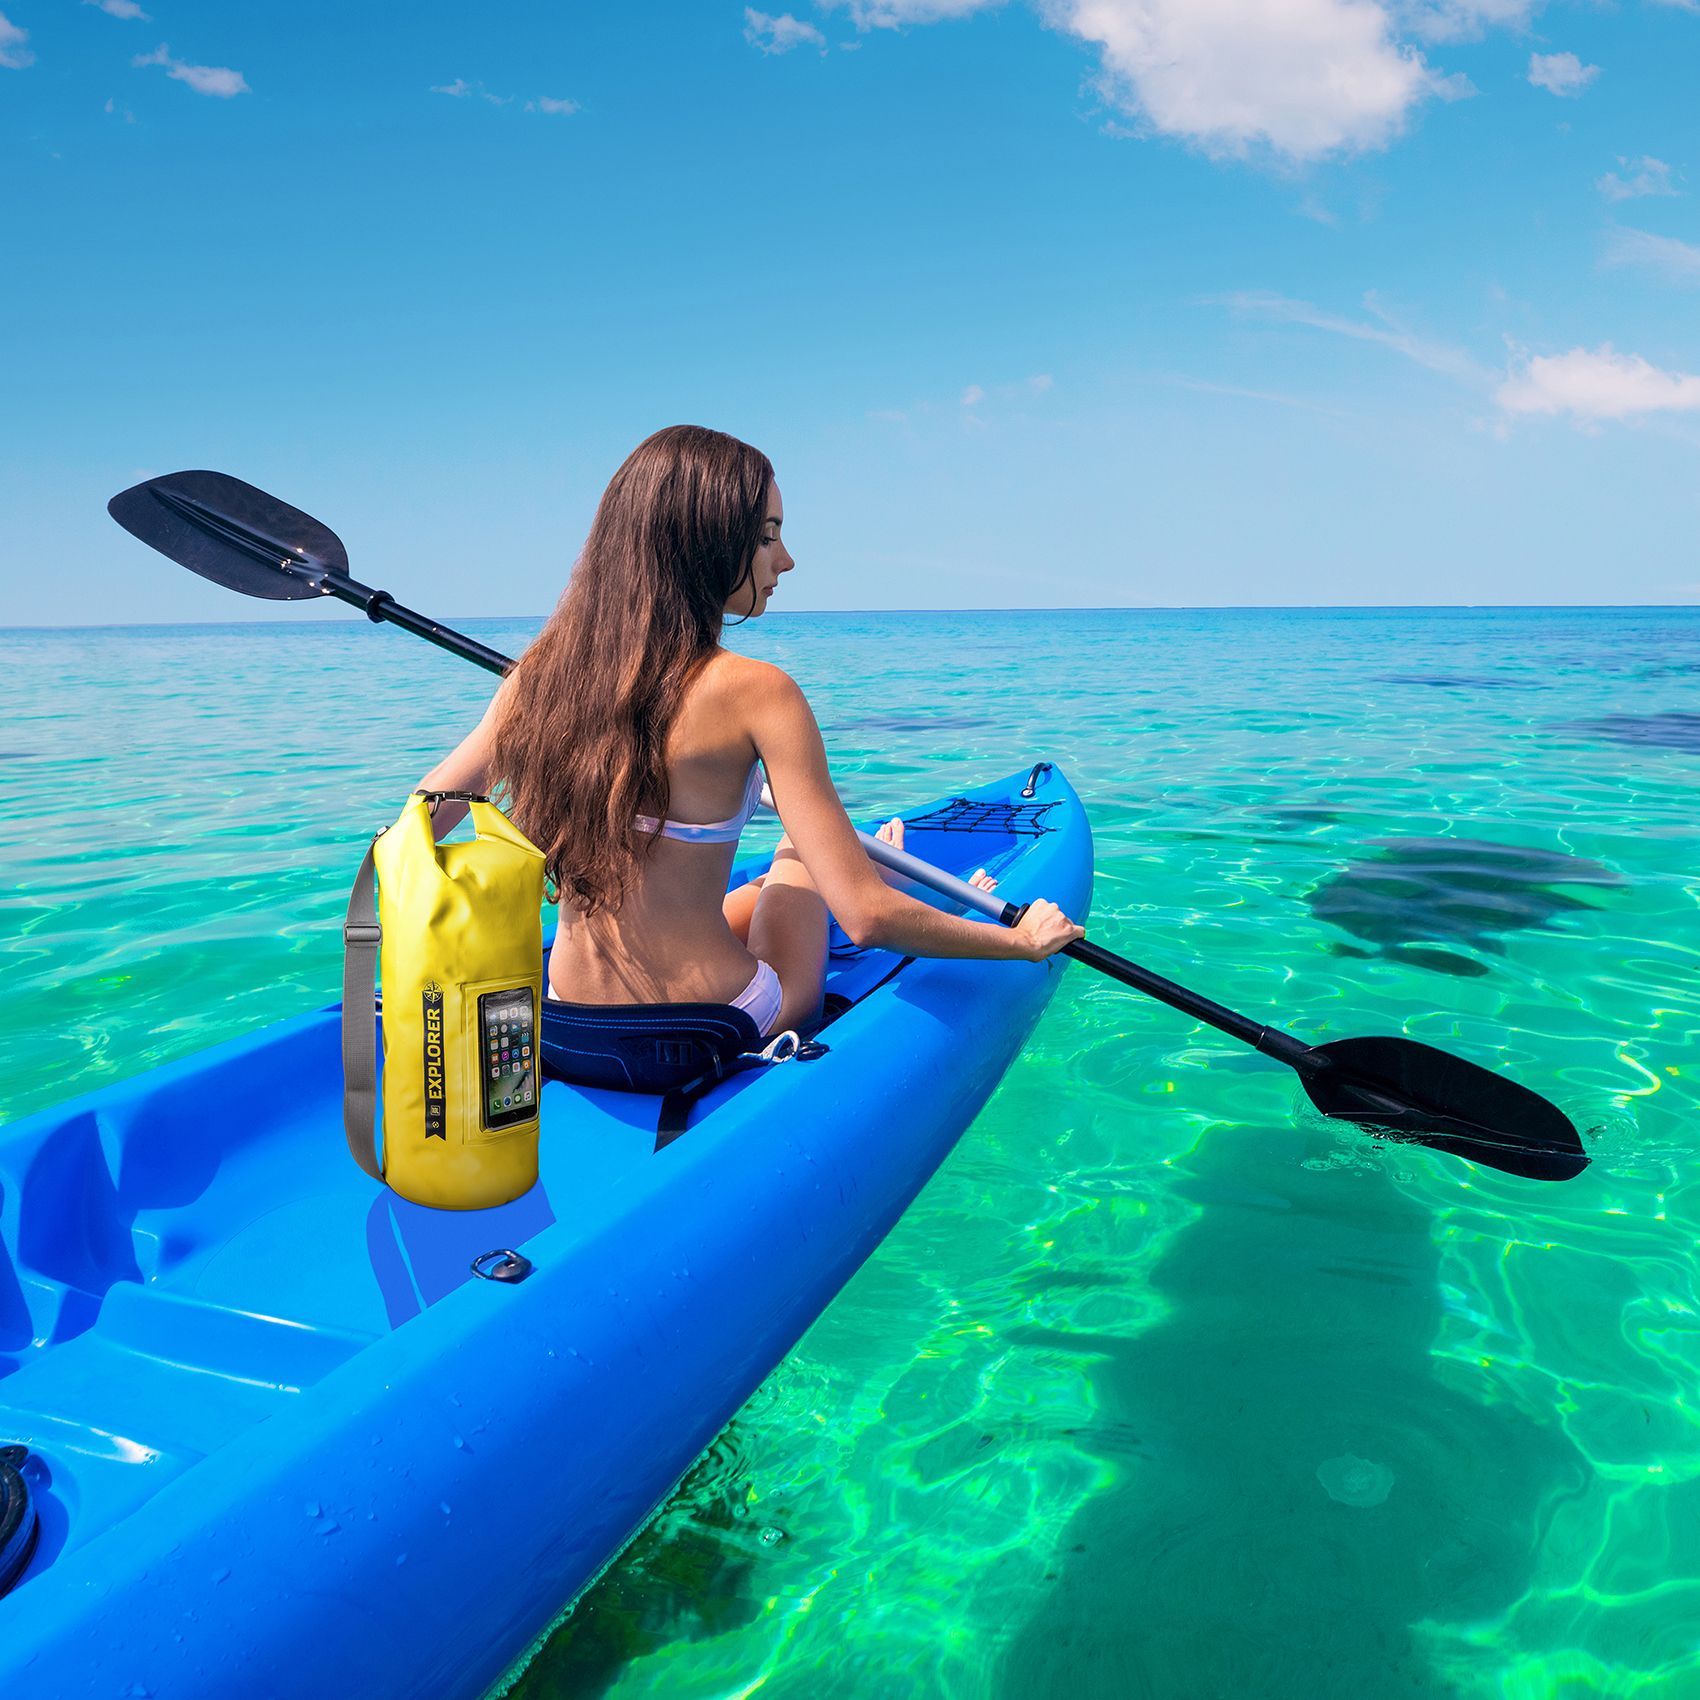 Dame in blauwe kayak met peddels in helder zee water met gele Explorer rugzak van Celly